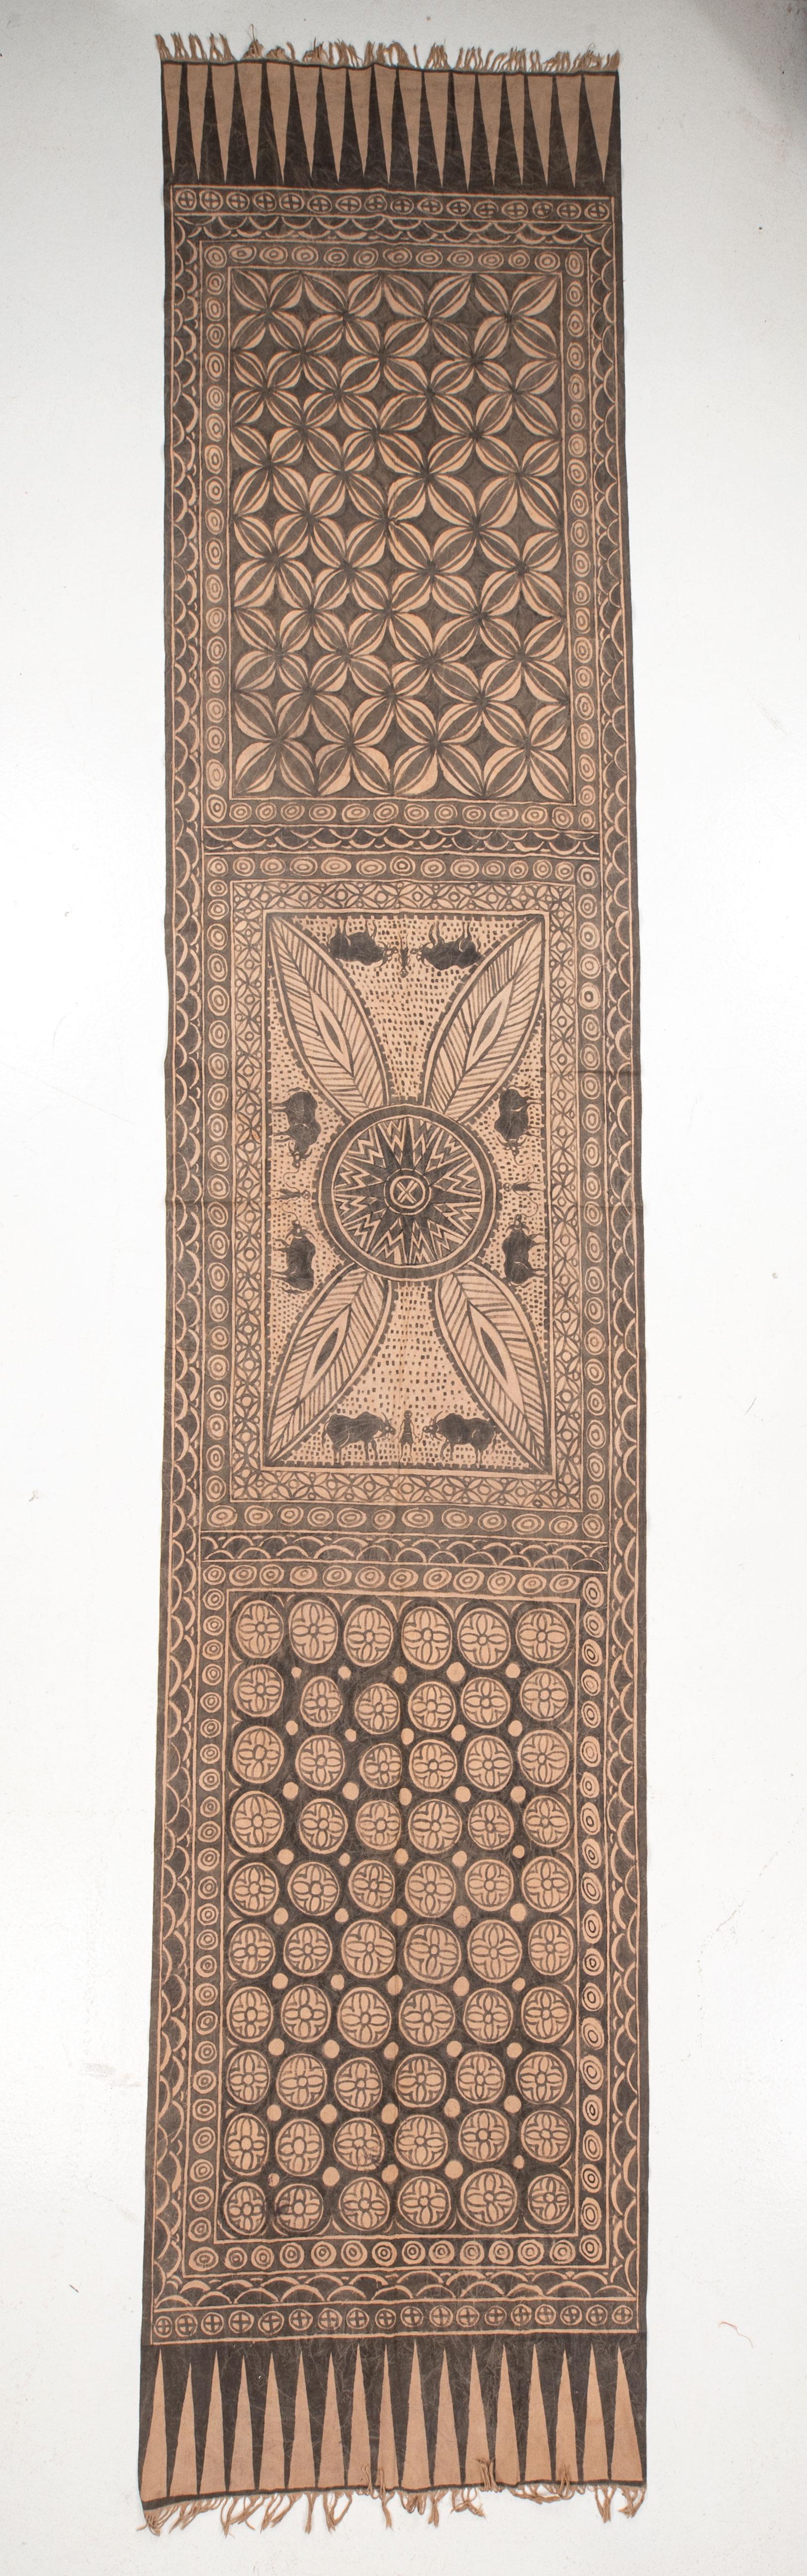 Un textile rituel du peuple Toroja de Sulawesi, peint à la main à l'aide de pigments de couleur naturels. Probablement au milieu du C.I.C. ou plus tôt.

